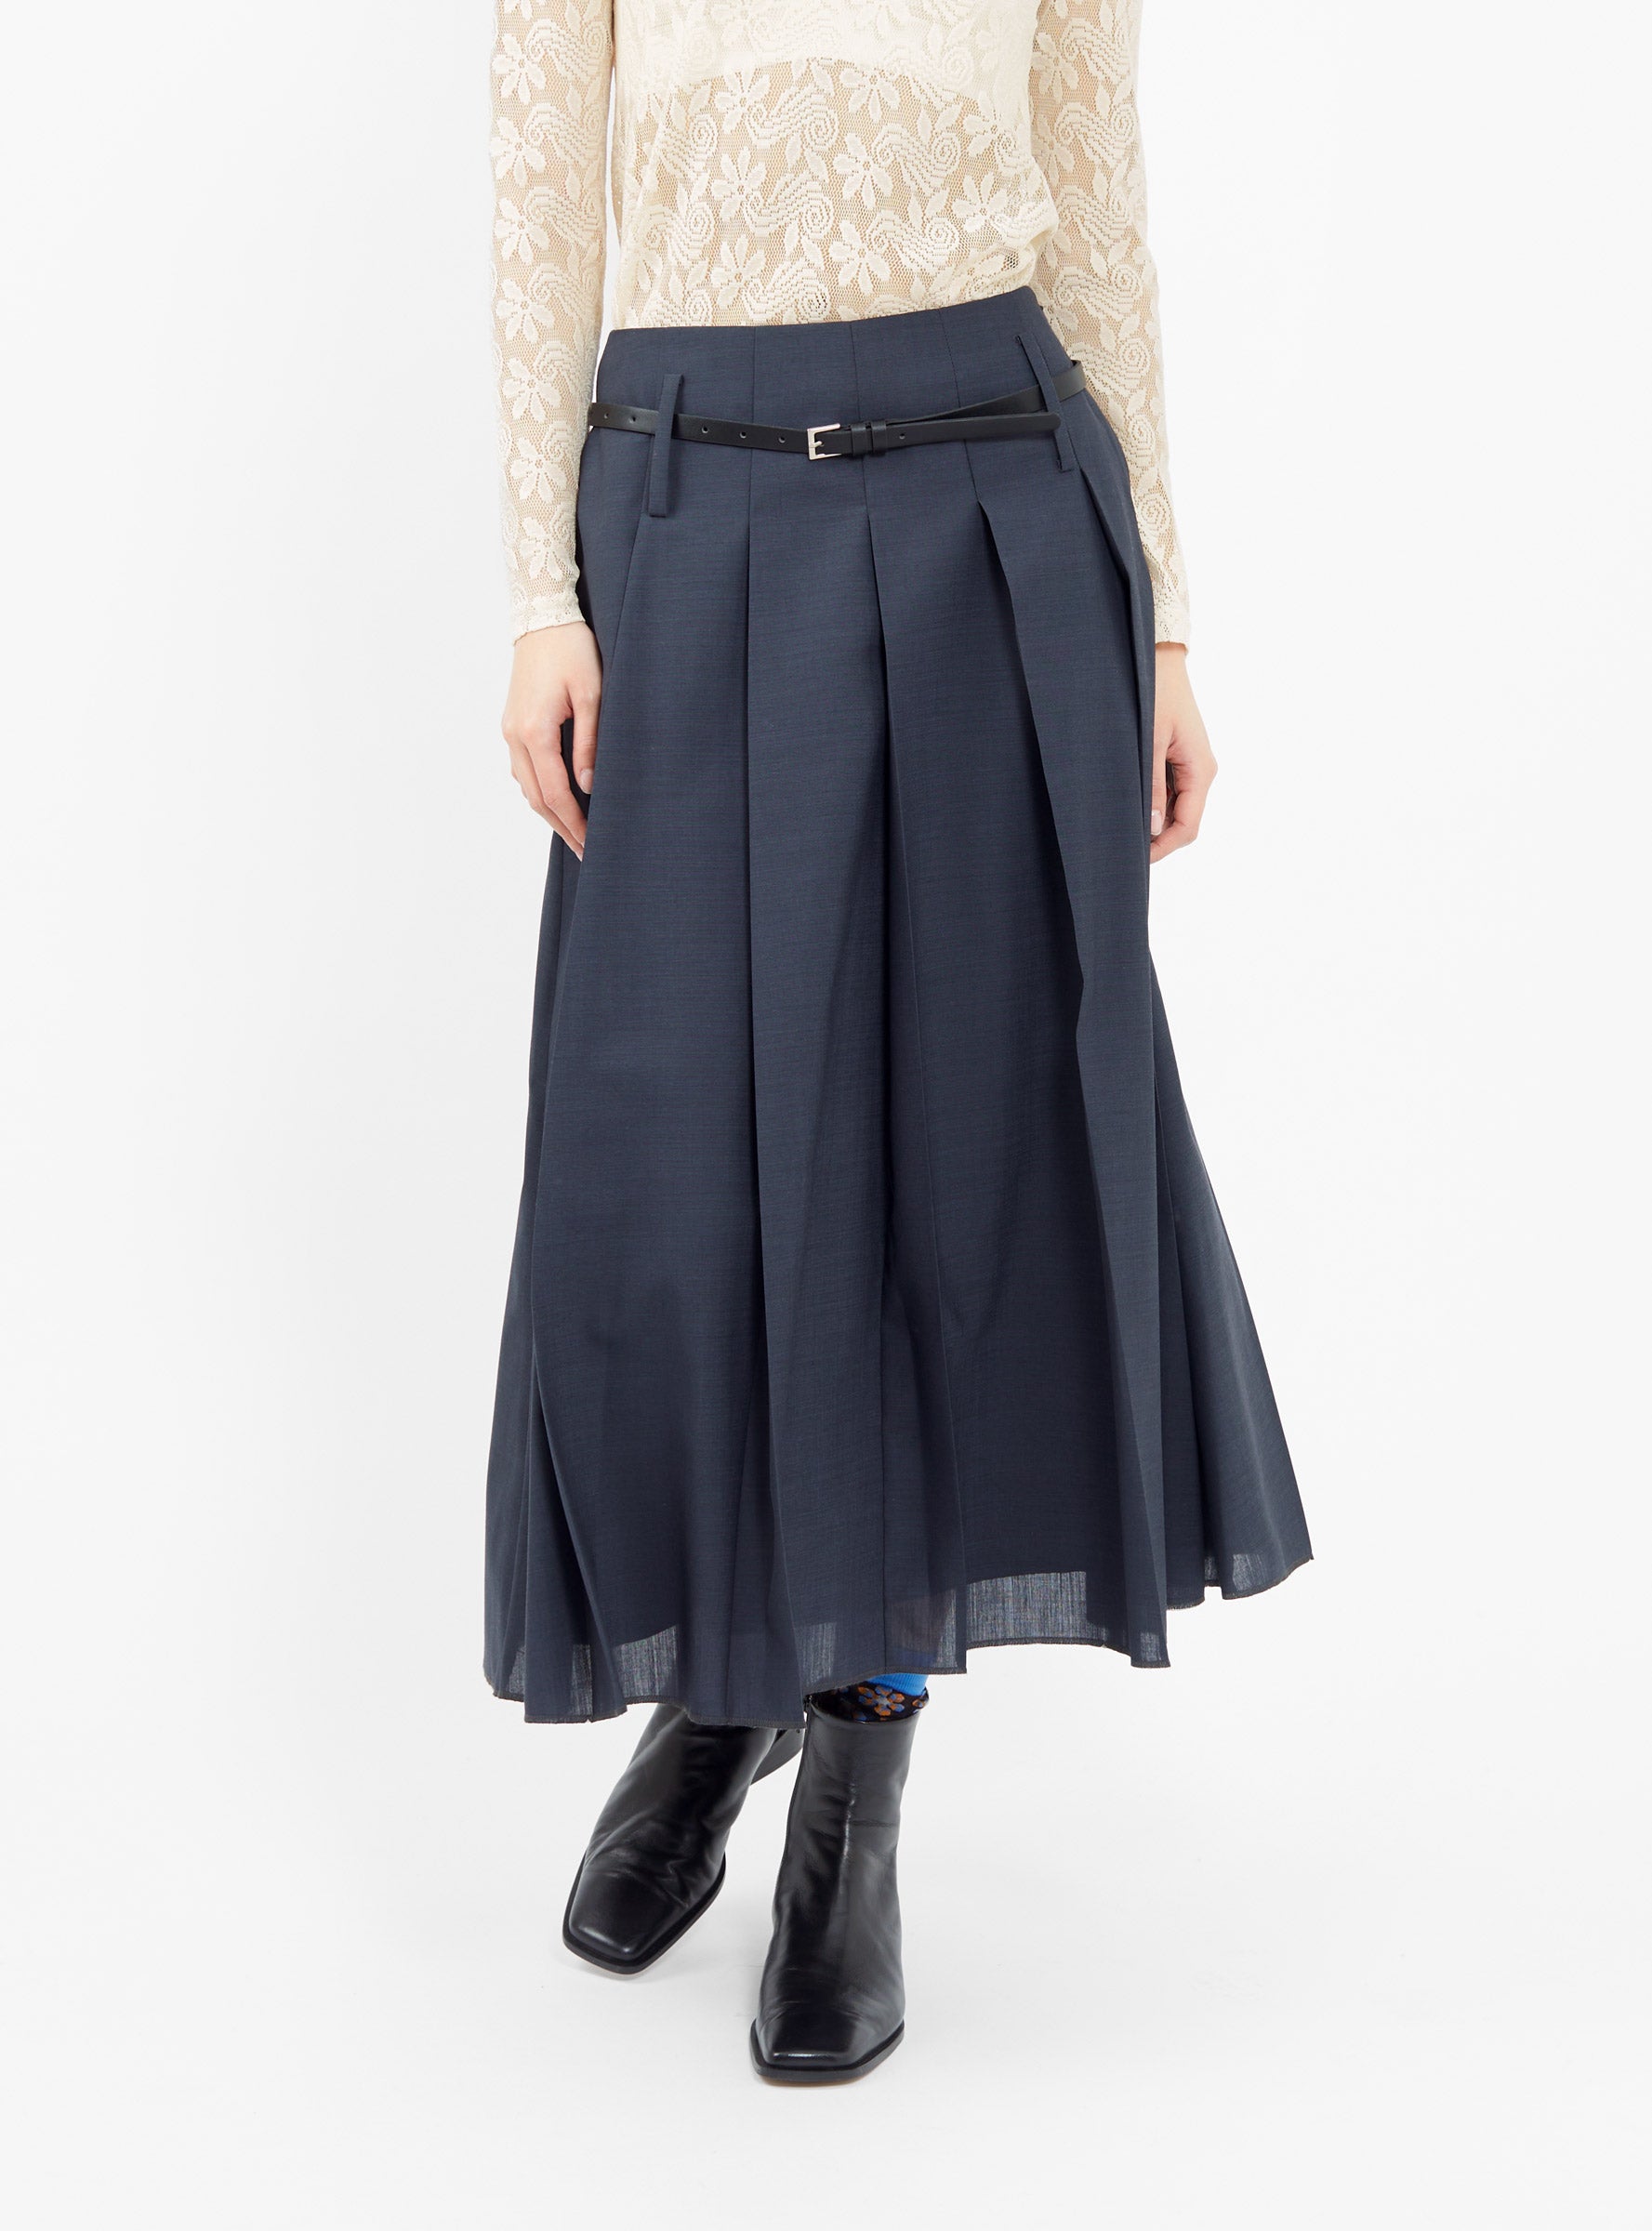  Rejina Pyo Odette Skirt Slate Blue - Size: UK12